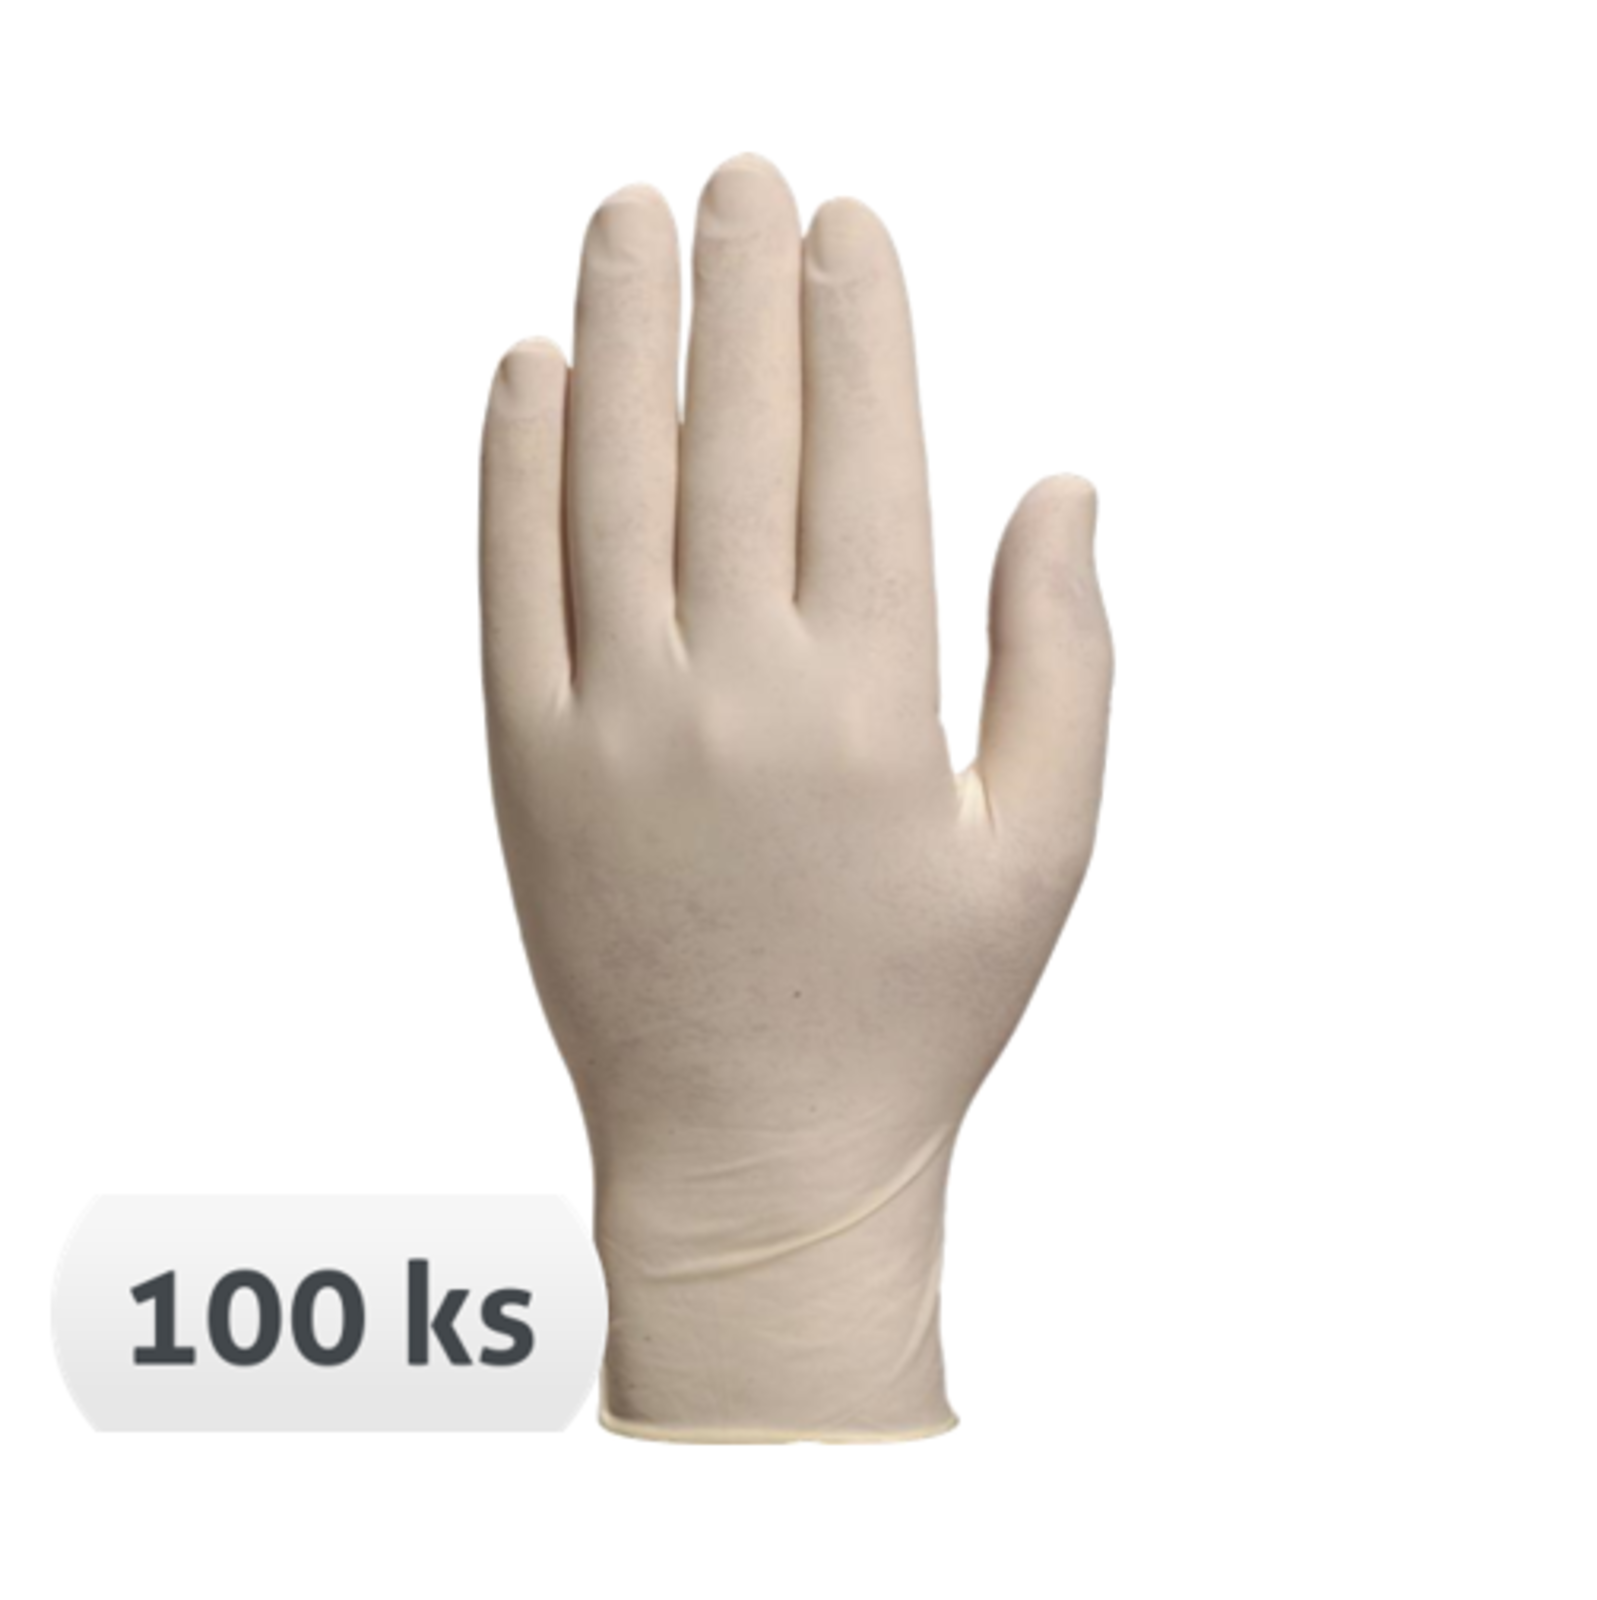 Jednorazové latexové rukavice Veniclean V1340 nepudrované 100 ks - veľkosť: 8/9